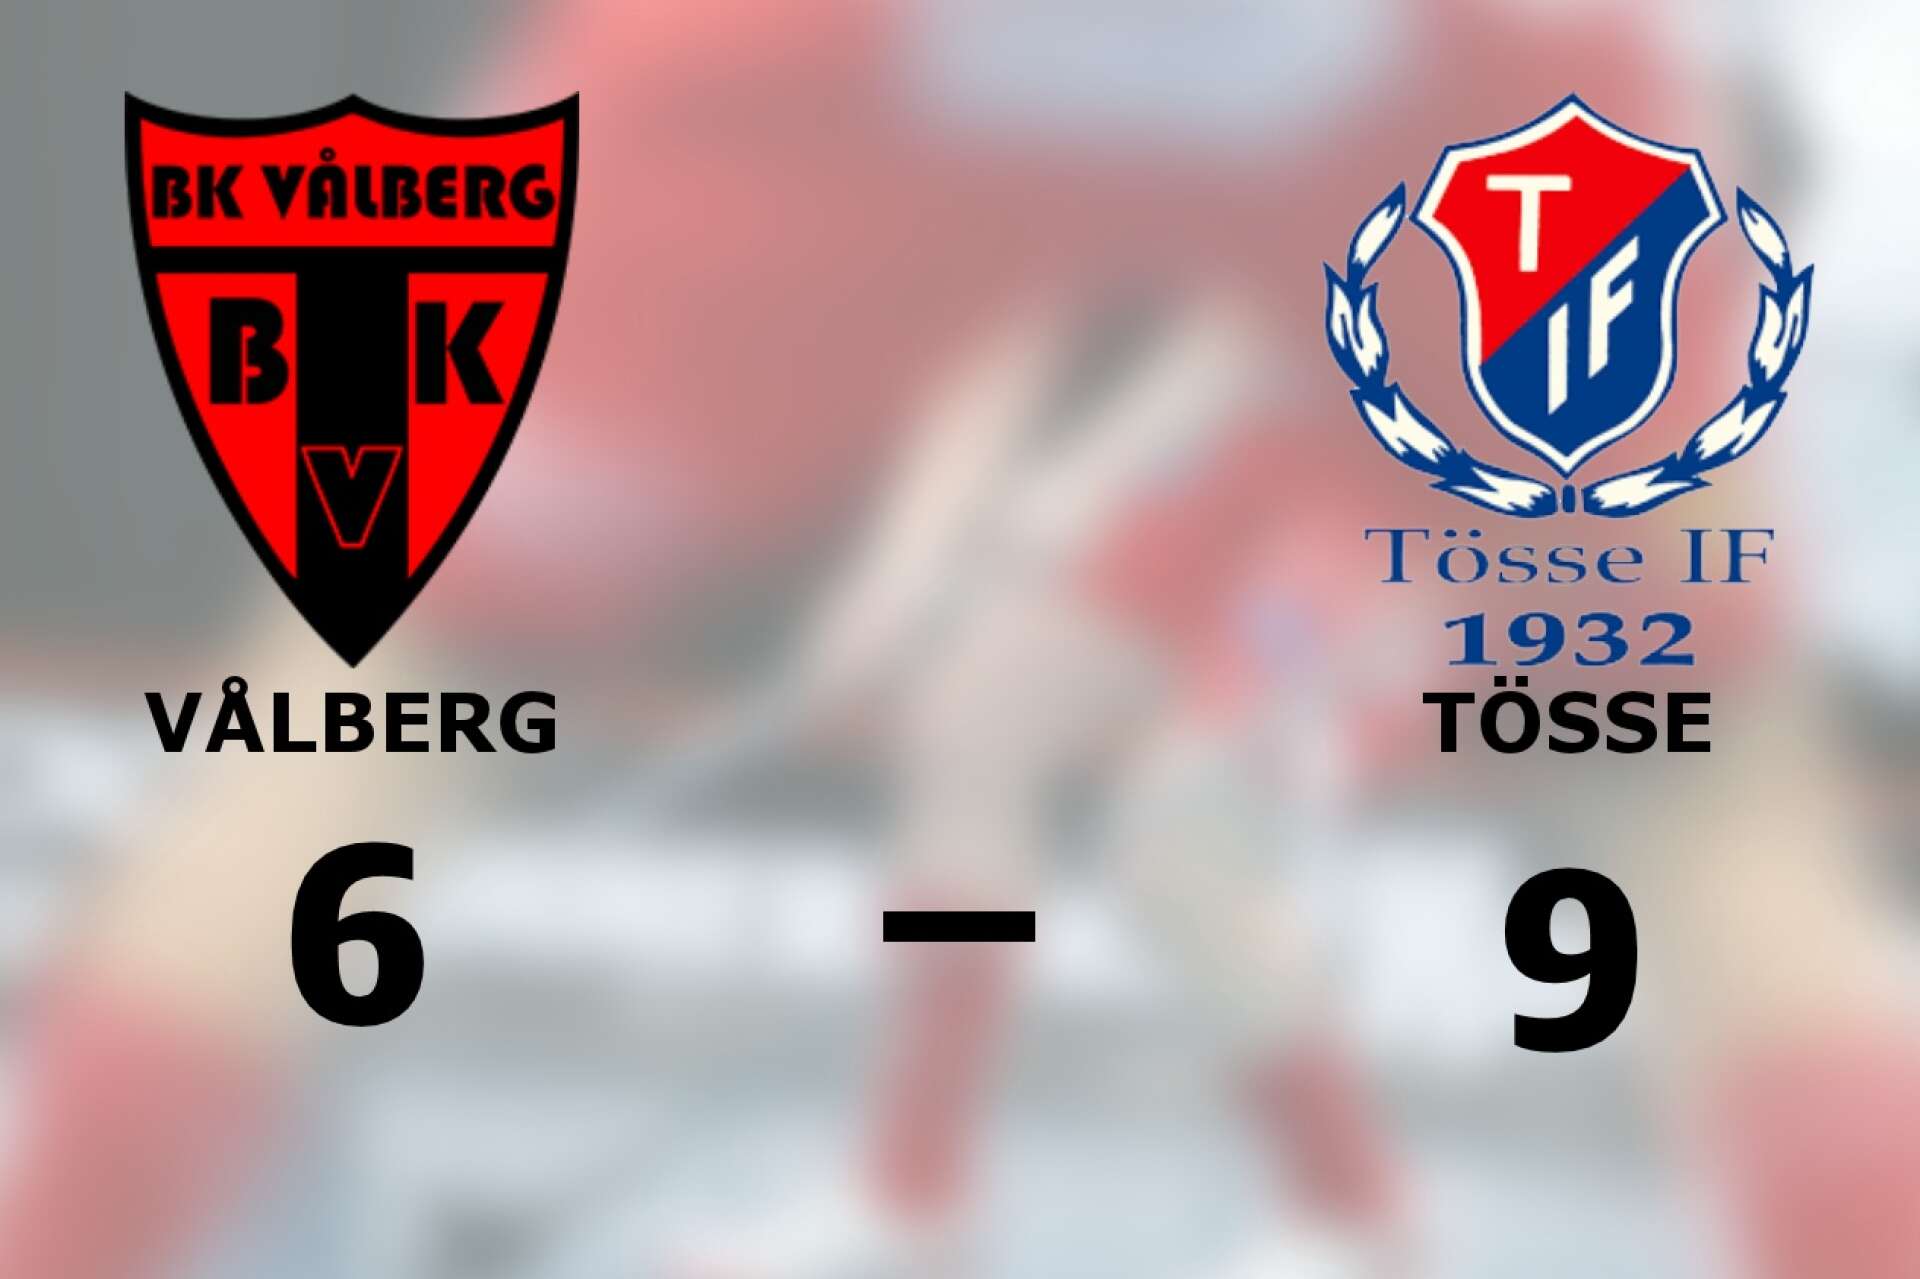 BK Vålberg förlorade mot Tösse IF